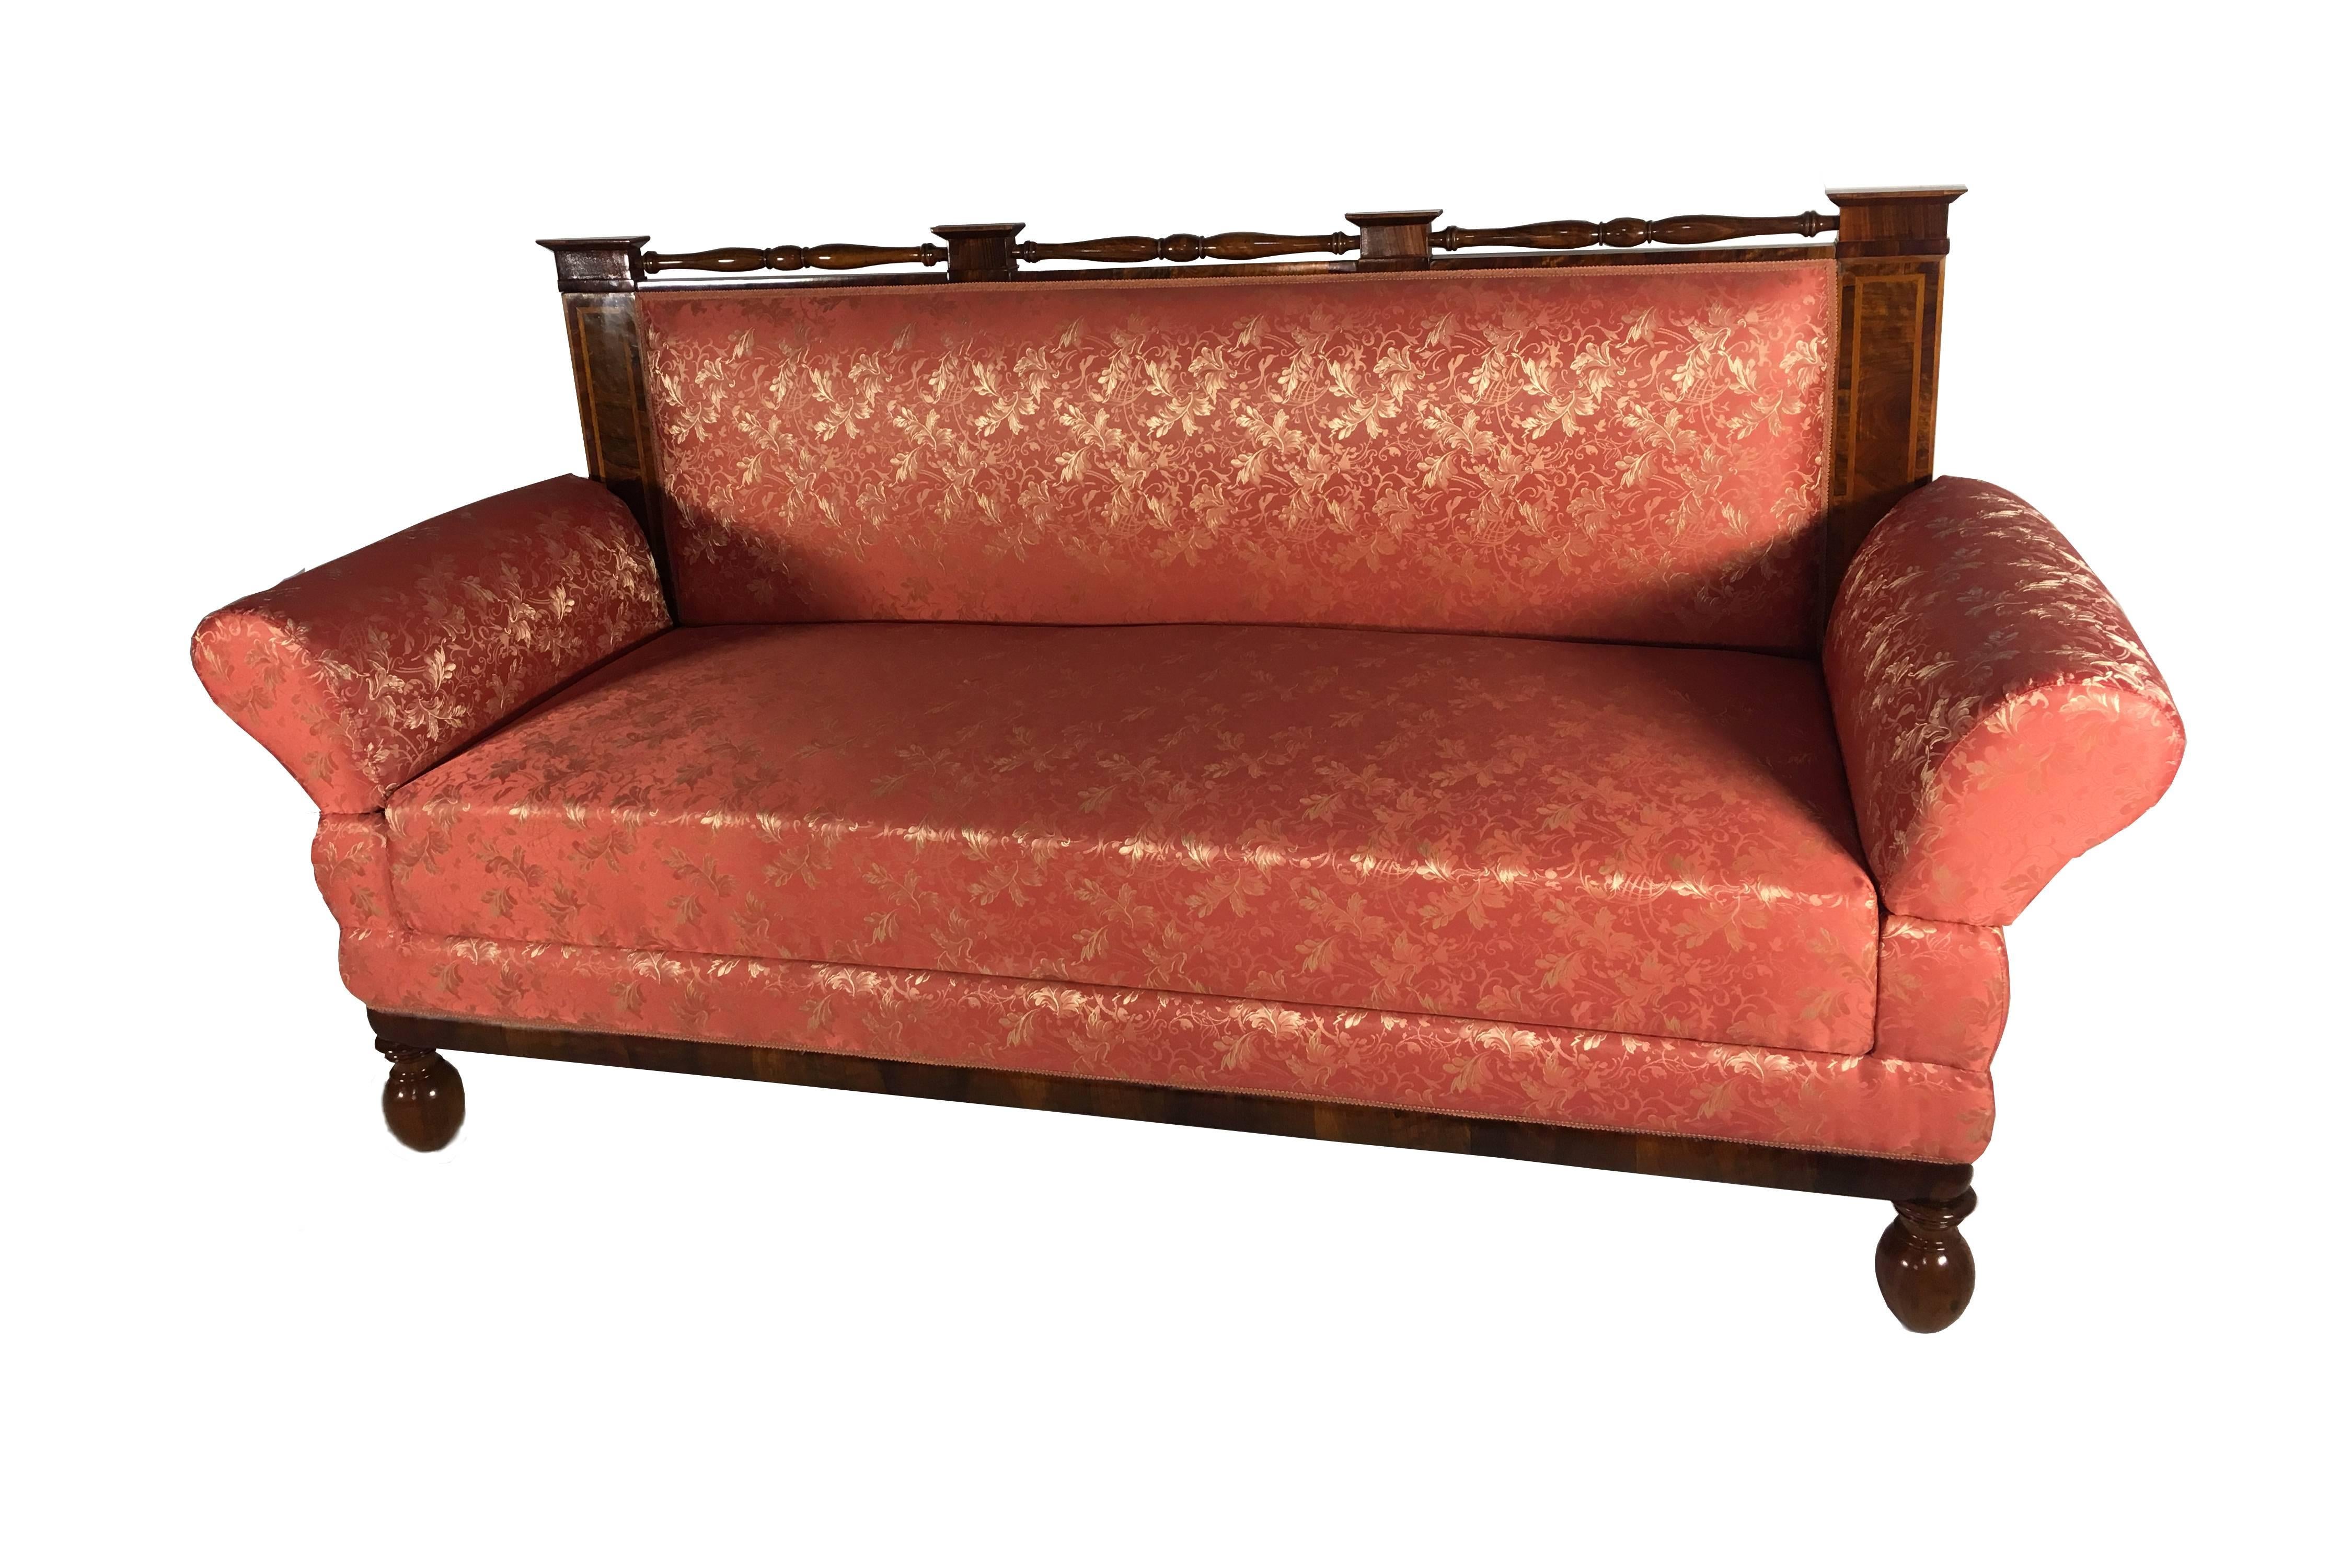 Elegante Biedermeier-Sitzgruppe bestehend aus einem Sofa und zwei Sesseln. Außergewöhnliche Verarbeitung der Hölzer nach den Regeln der damaligen Zeit. 

Maße Sofa: 
Tiefe 75 cm, Breite 182 cm, Höhe 110 cm.
 